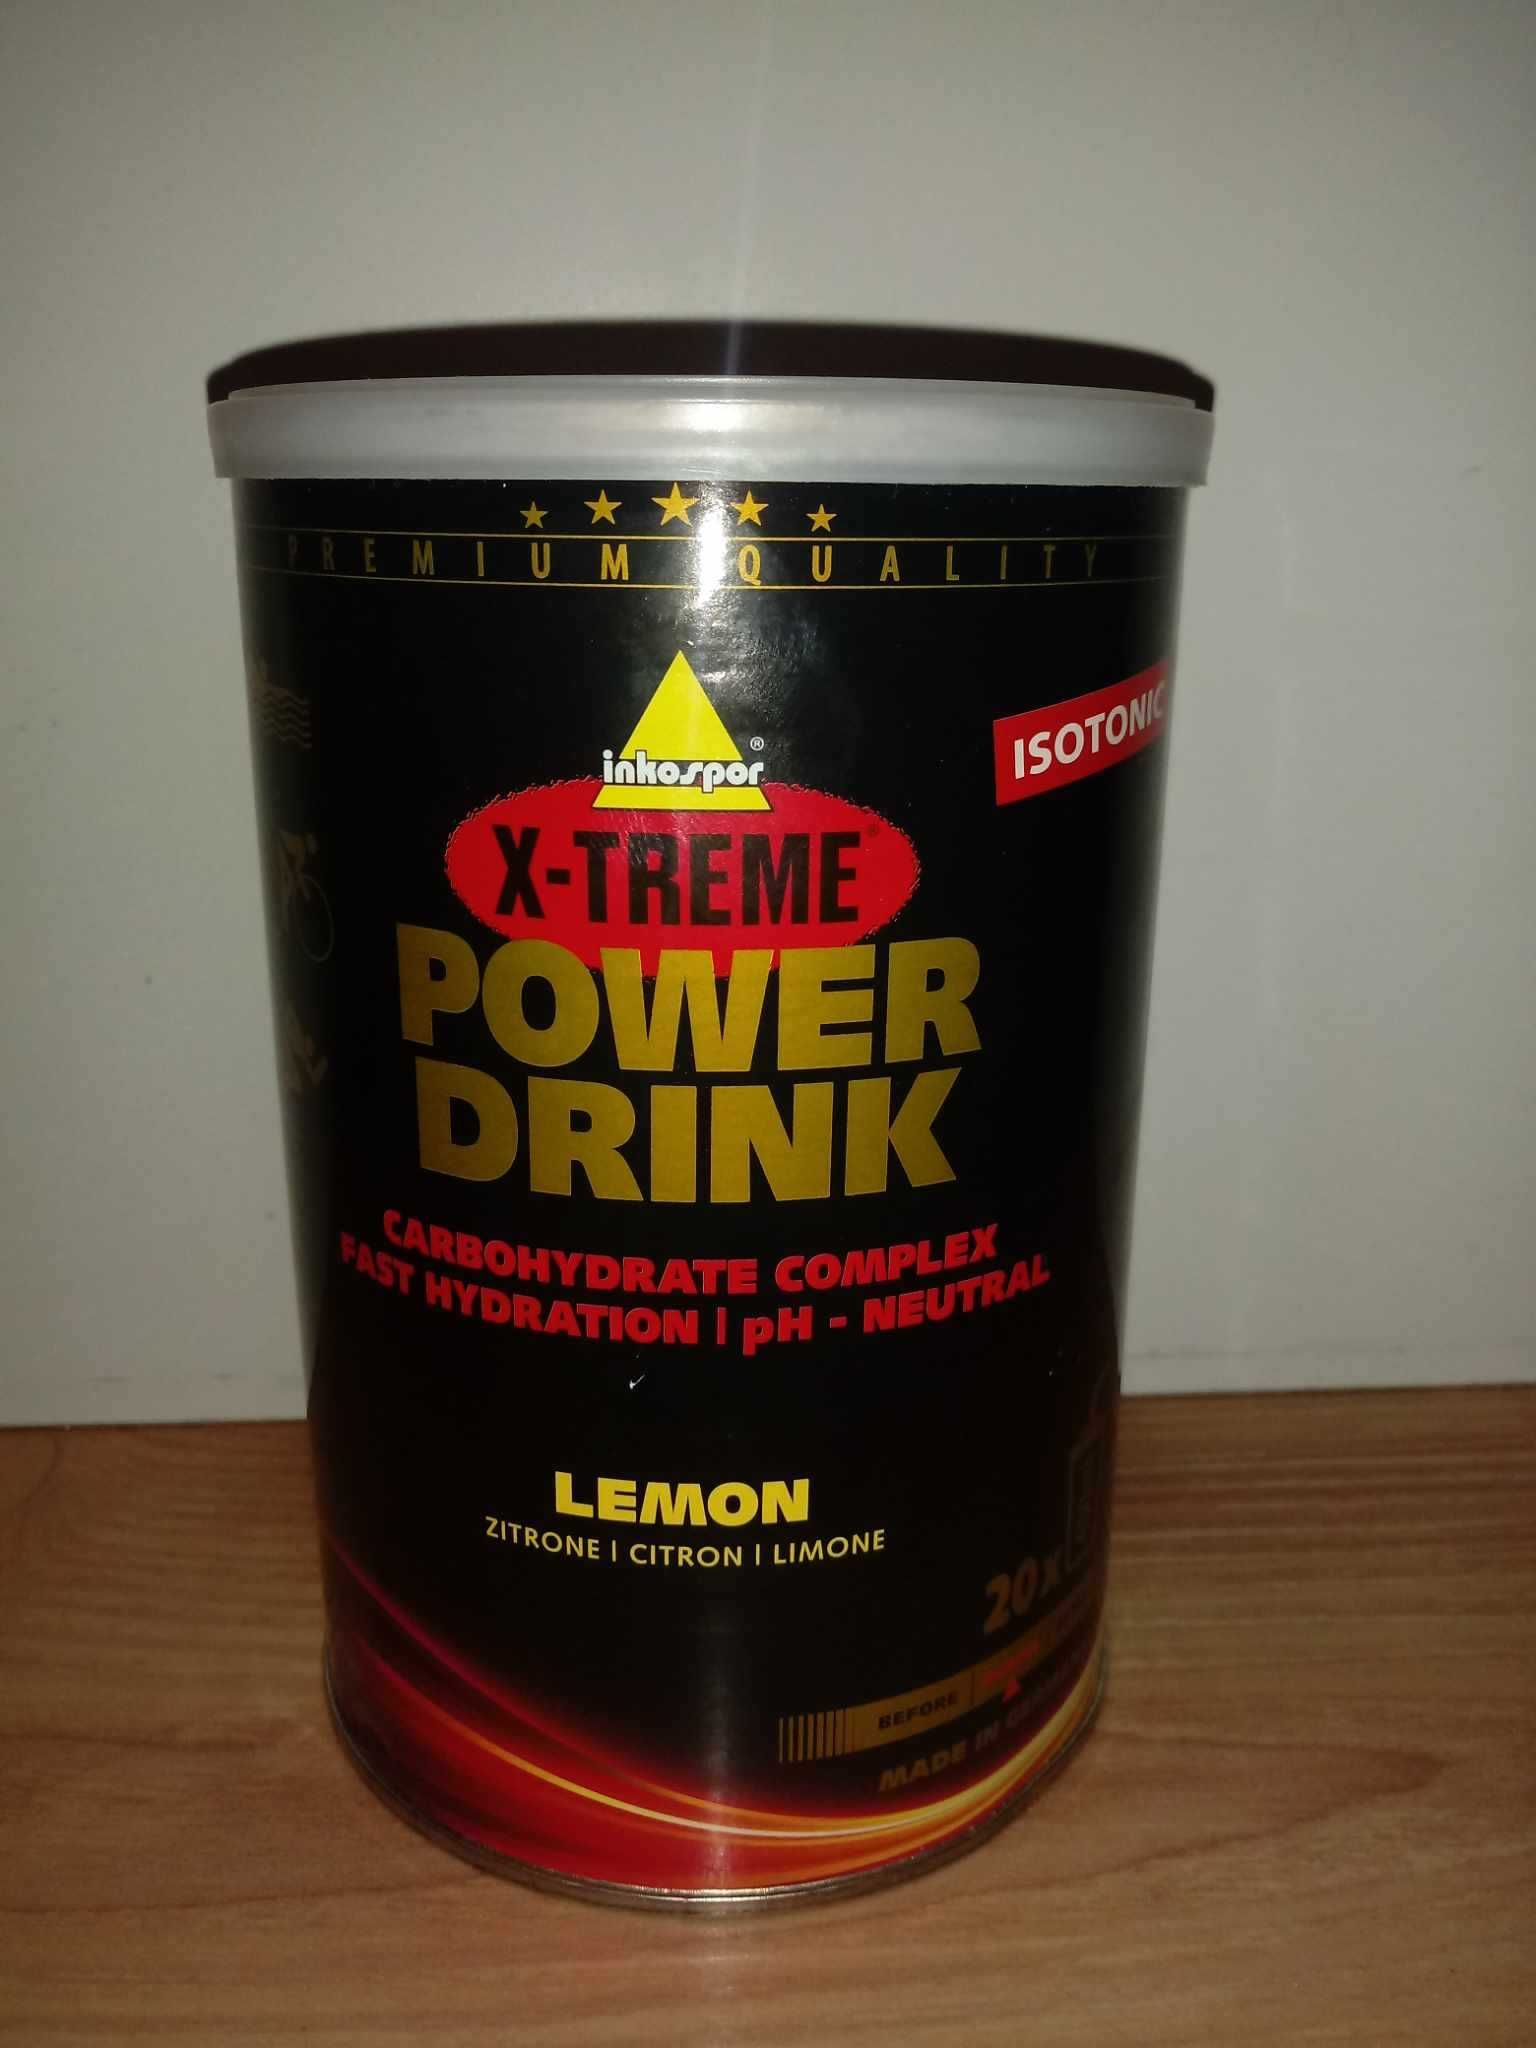 Inkospor X-Treme Power Drink